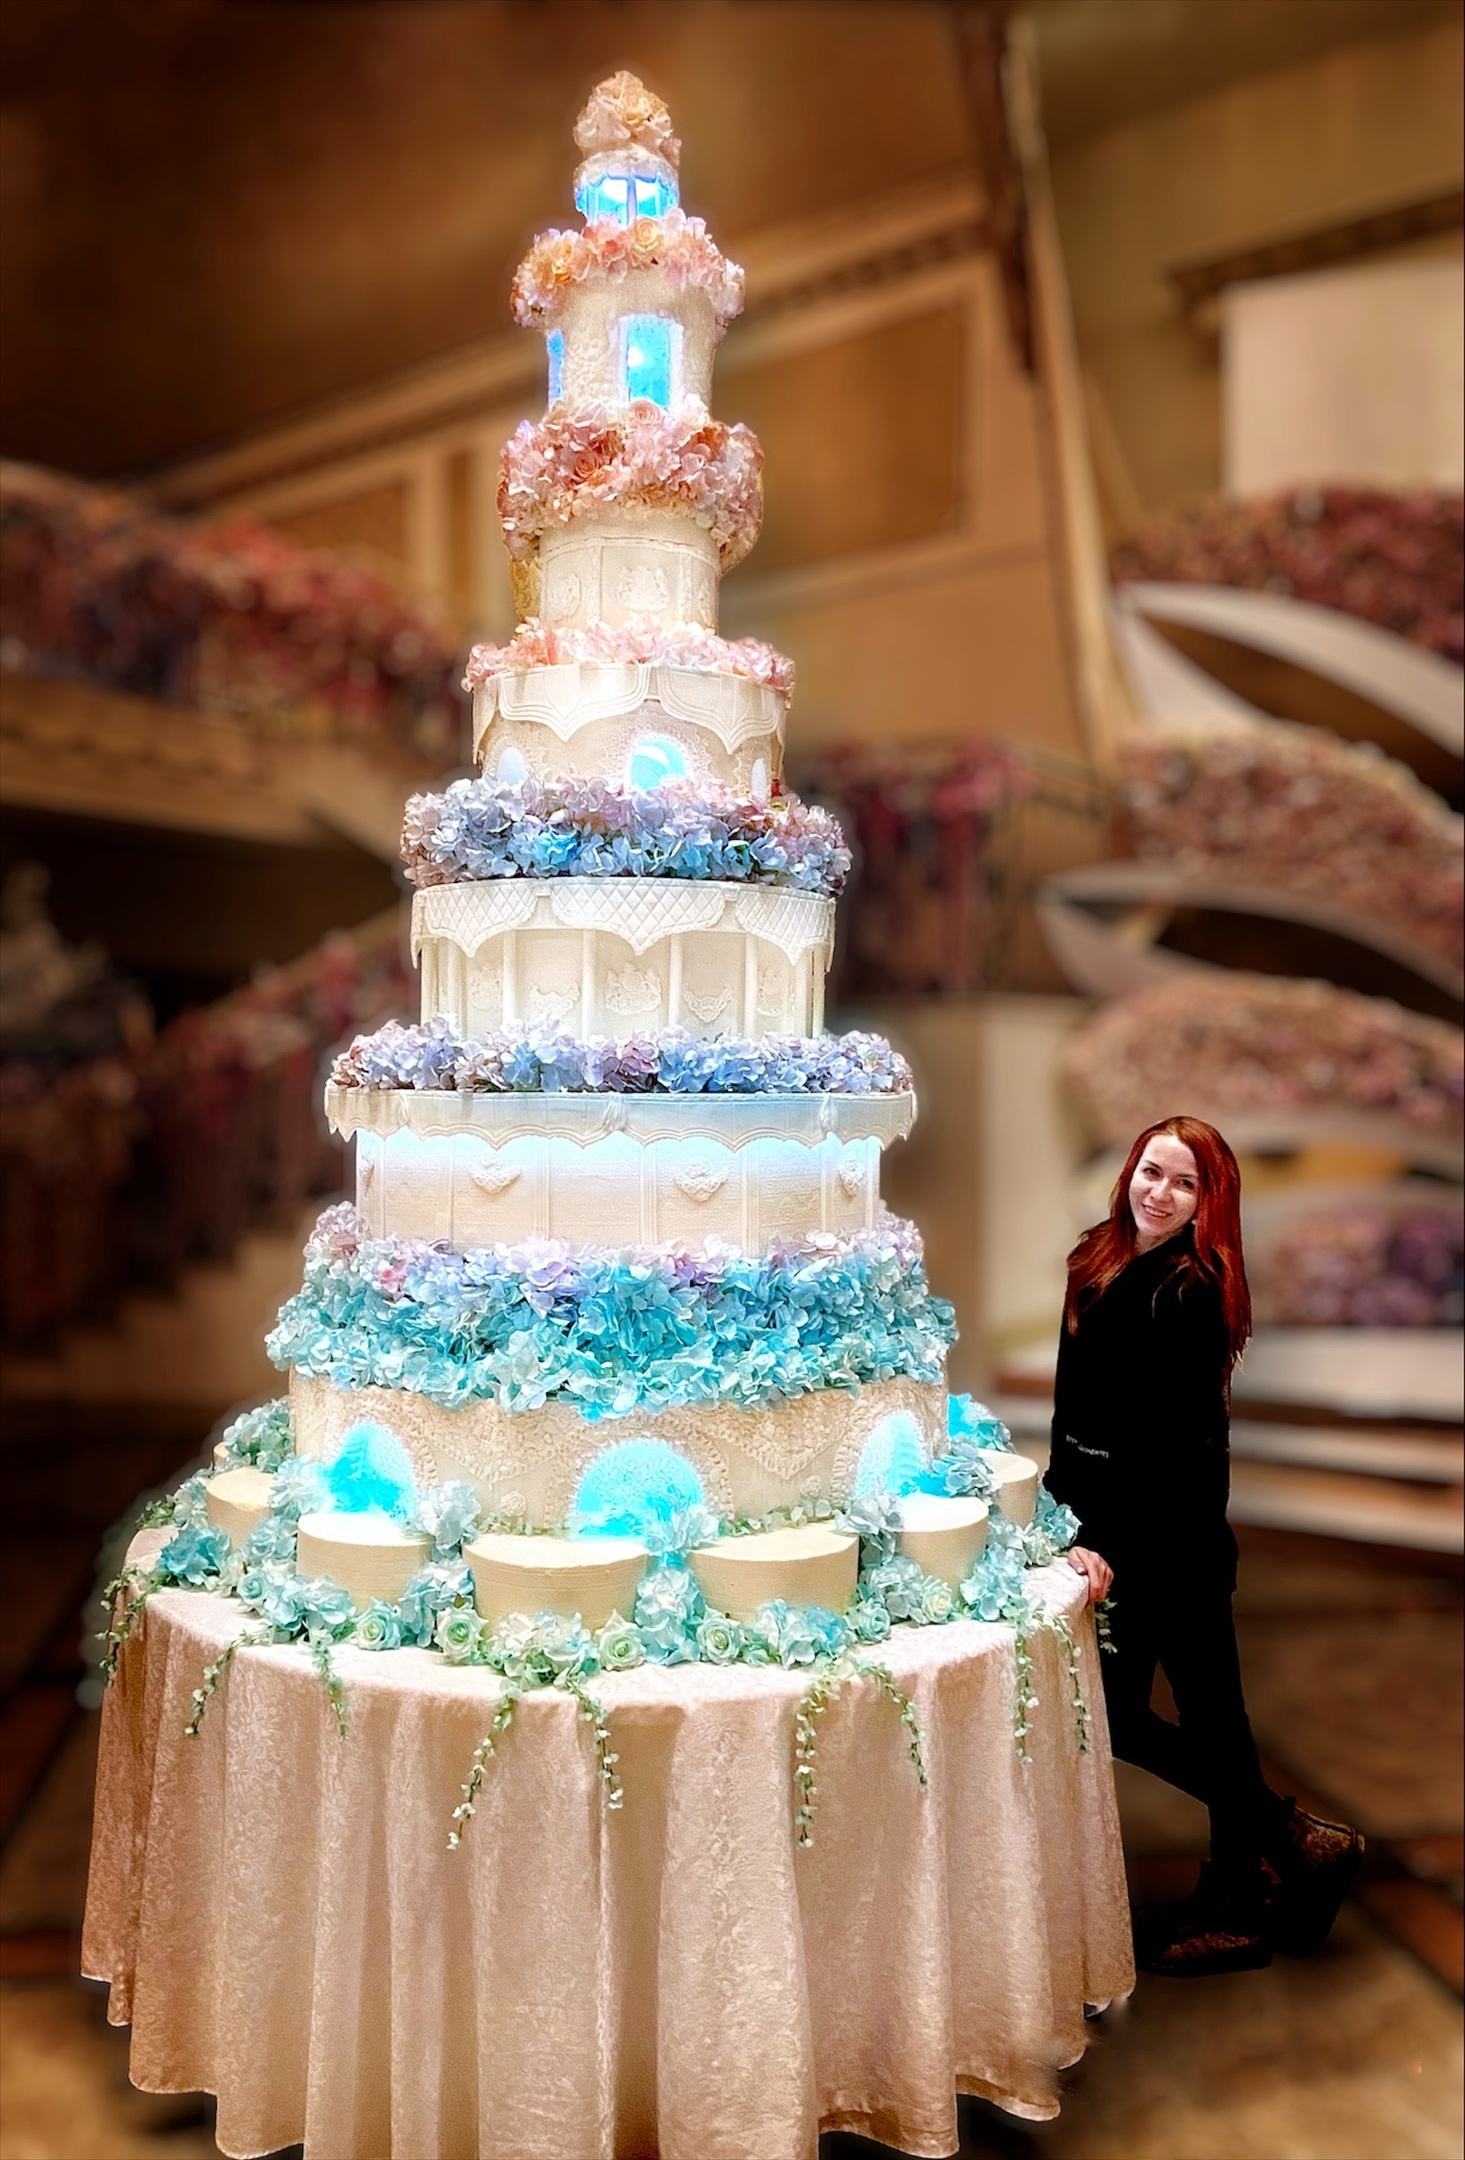 Такие торты чаще всего заказывают на свадьбы